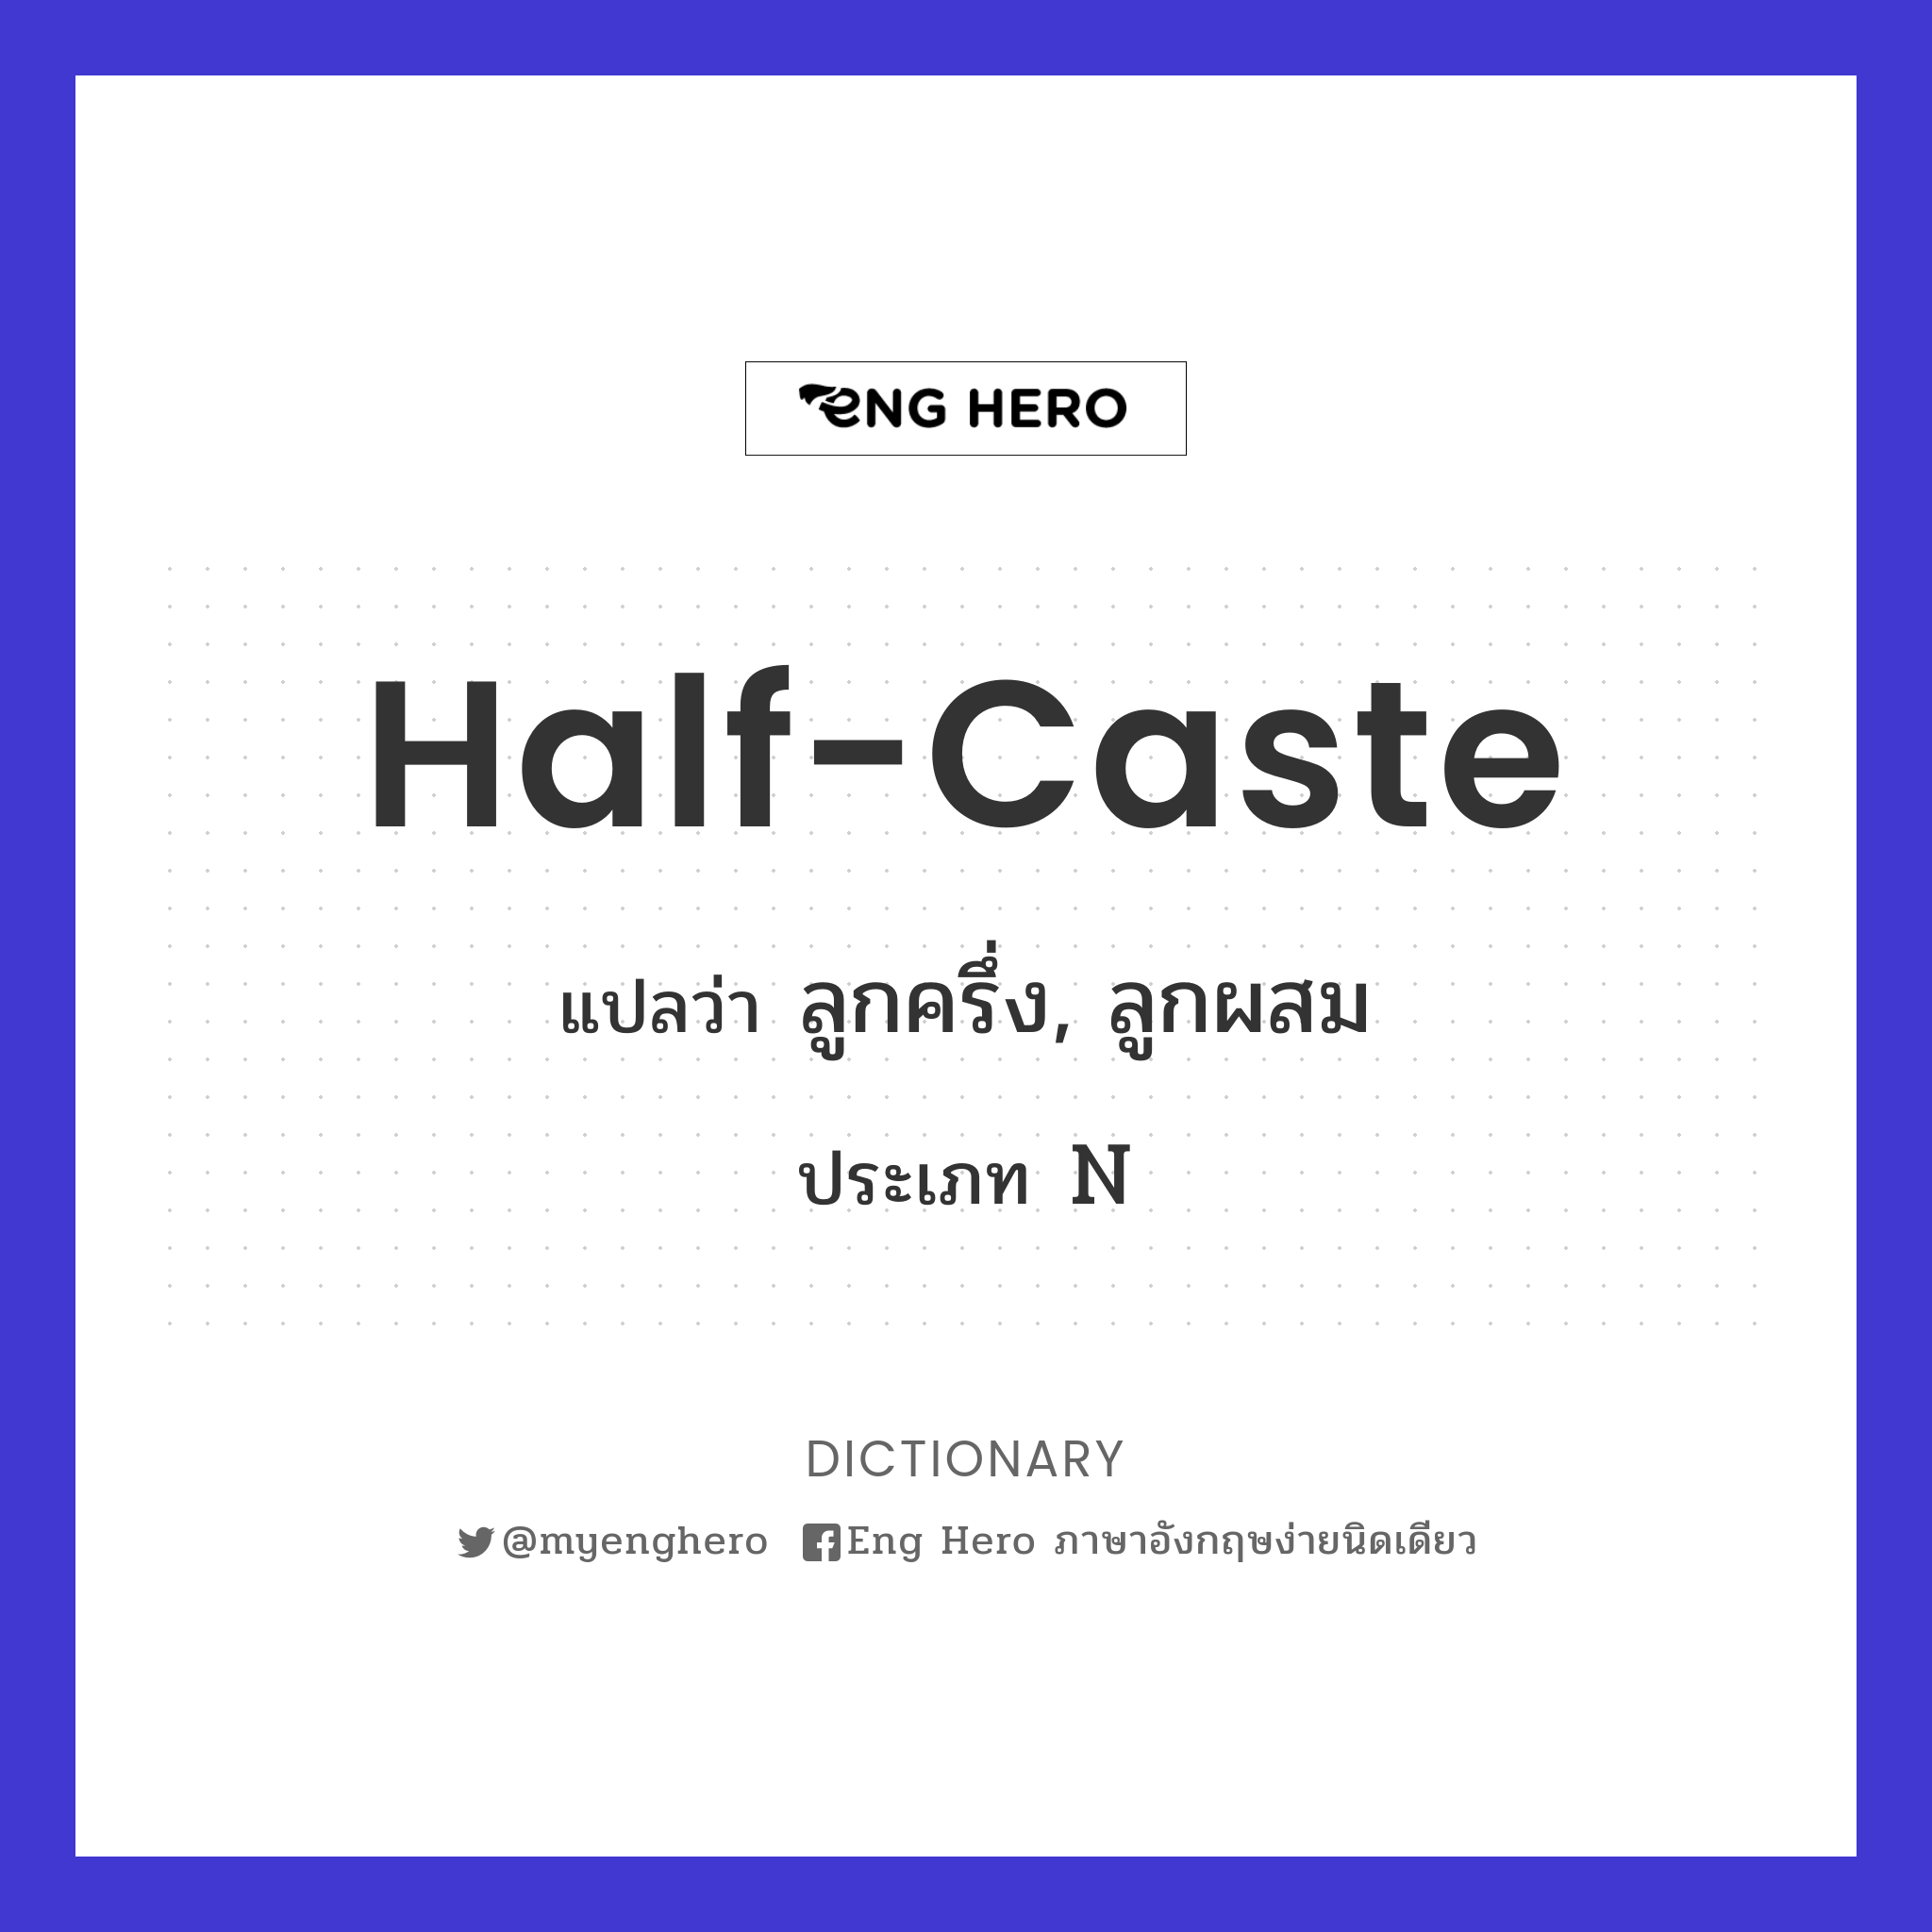 half-caste